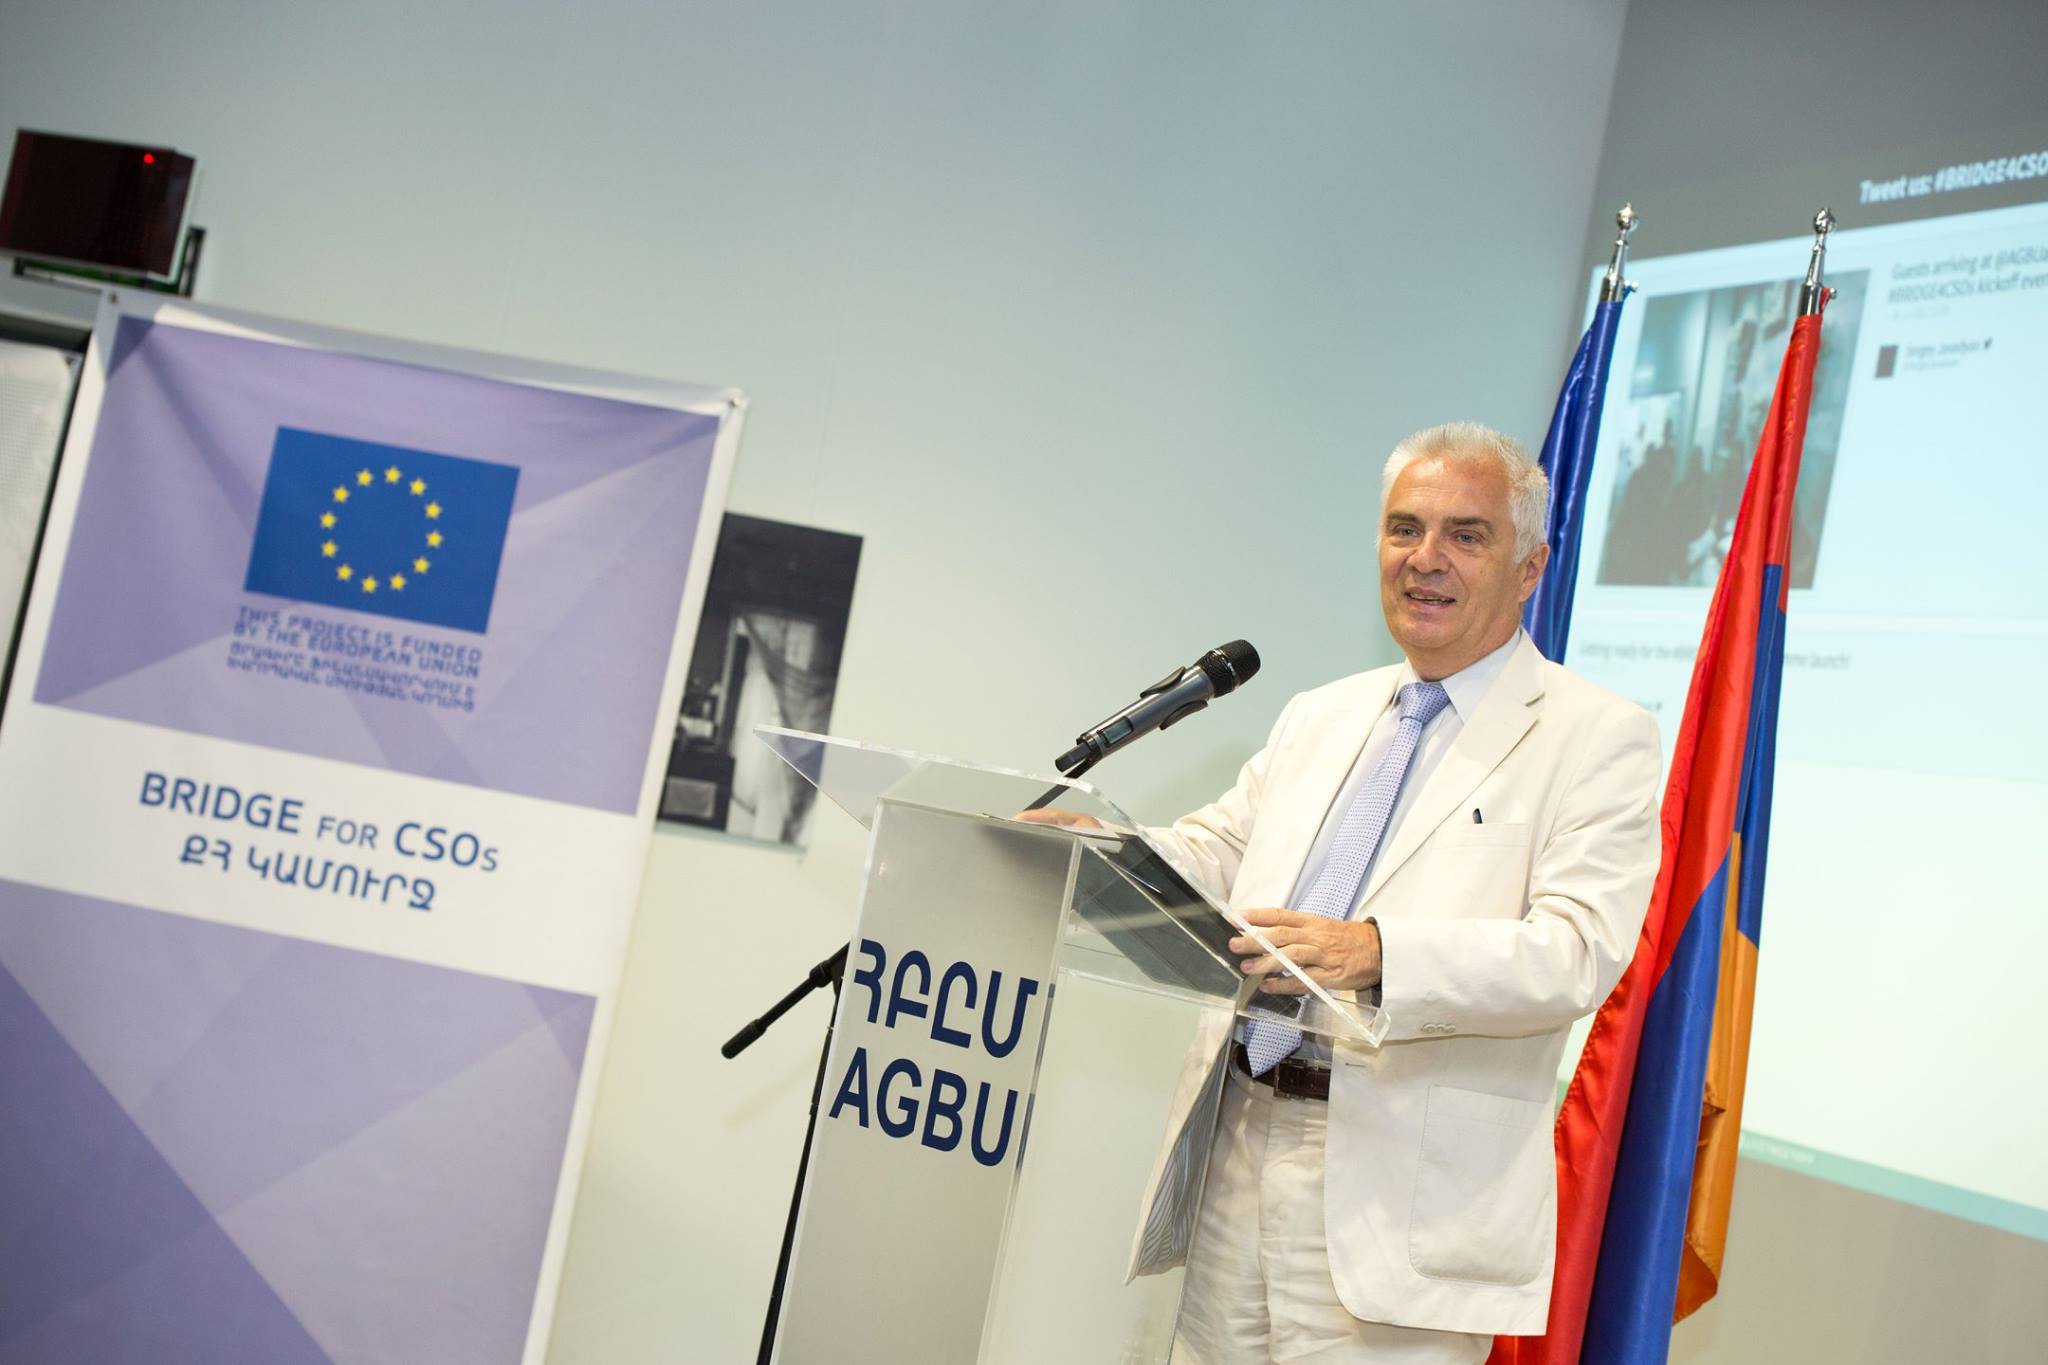 глава делегации ЕС в Армении, посол Петр Свитальский